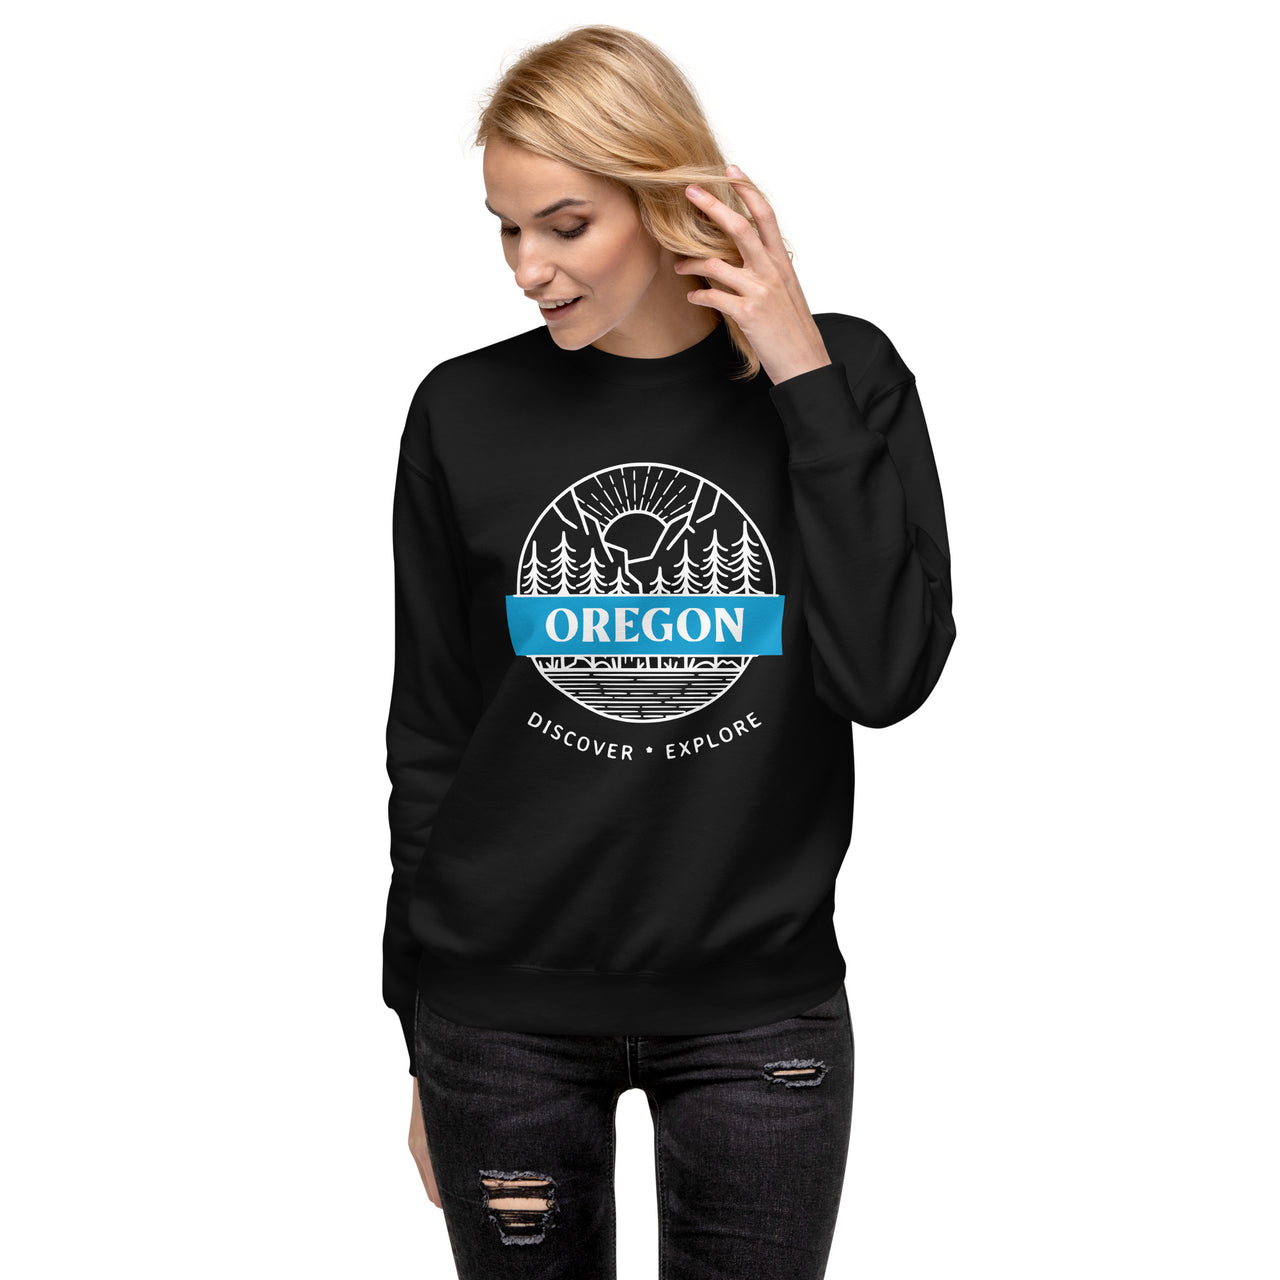 Oregon - Discover - Explore - Unisex Premium Sweatshirt